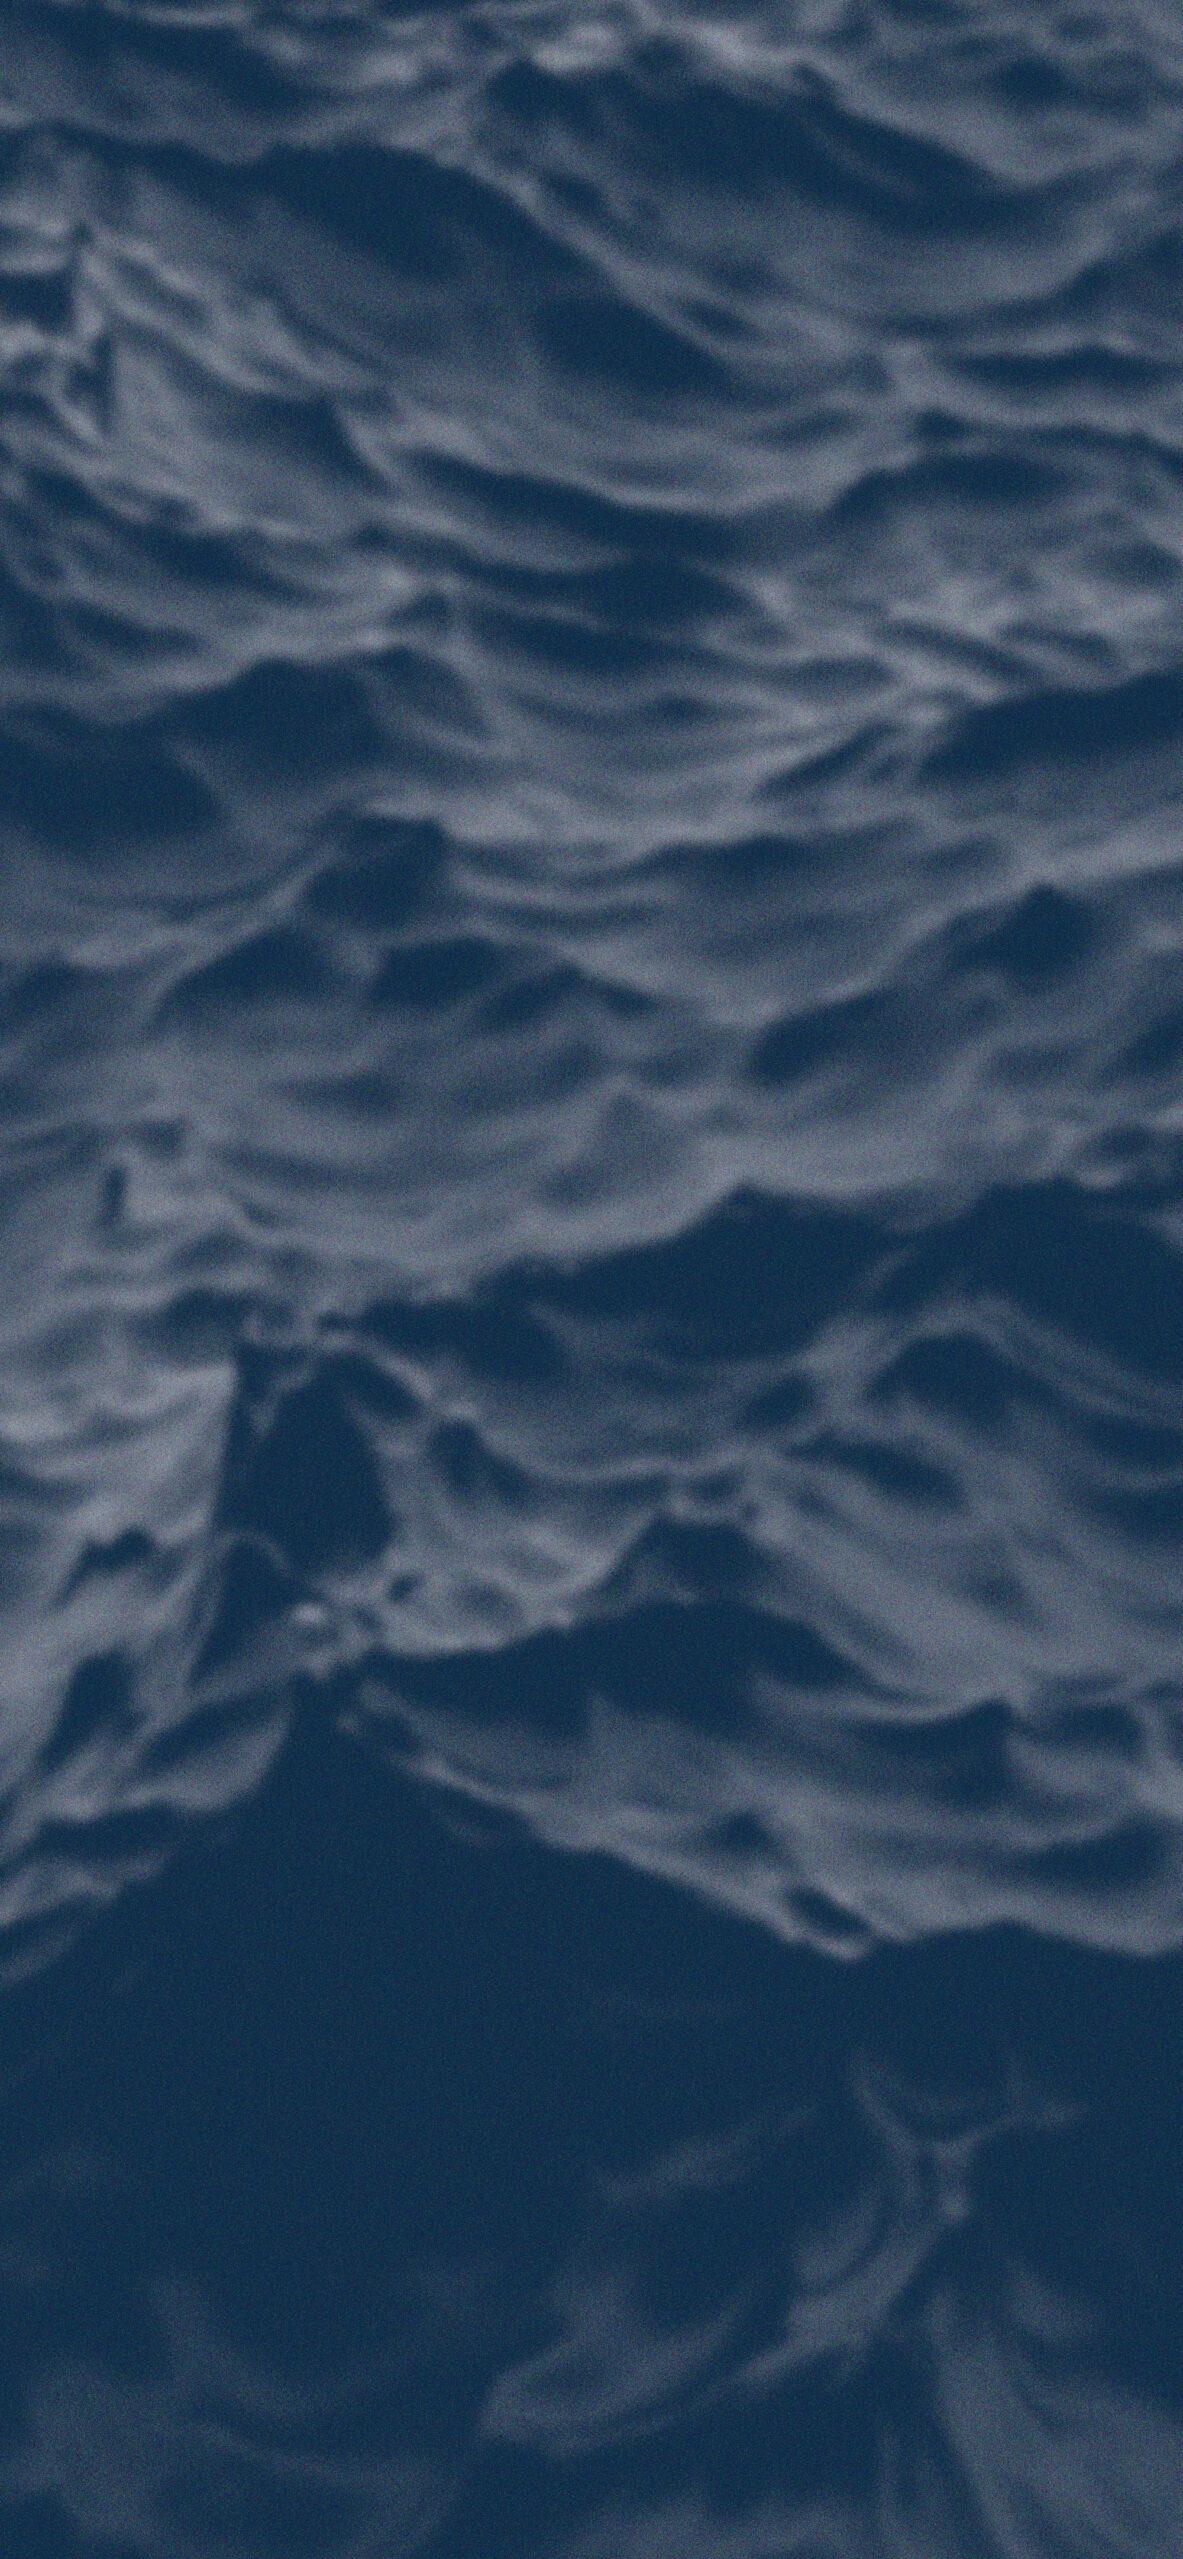 Ocean Waves Dark Blue Wallpaper iPhone Aesthetic